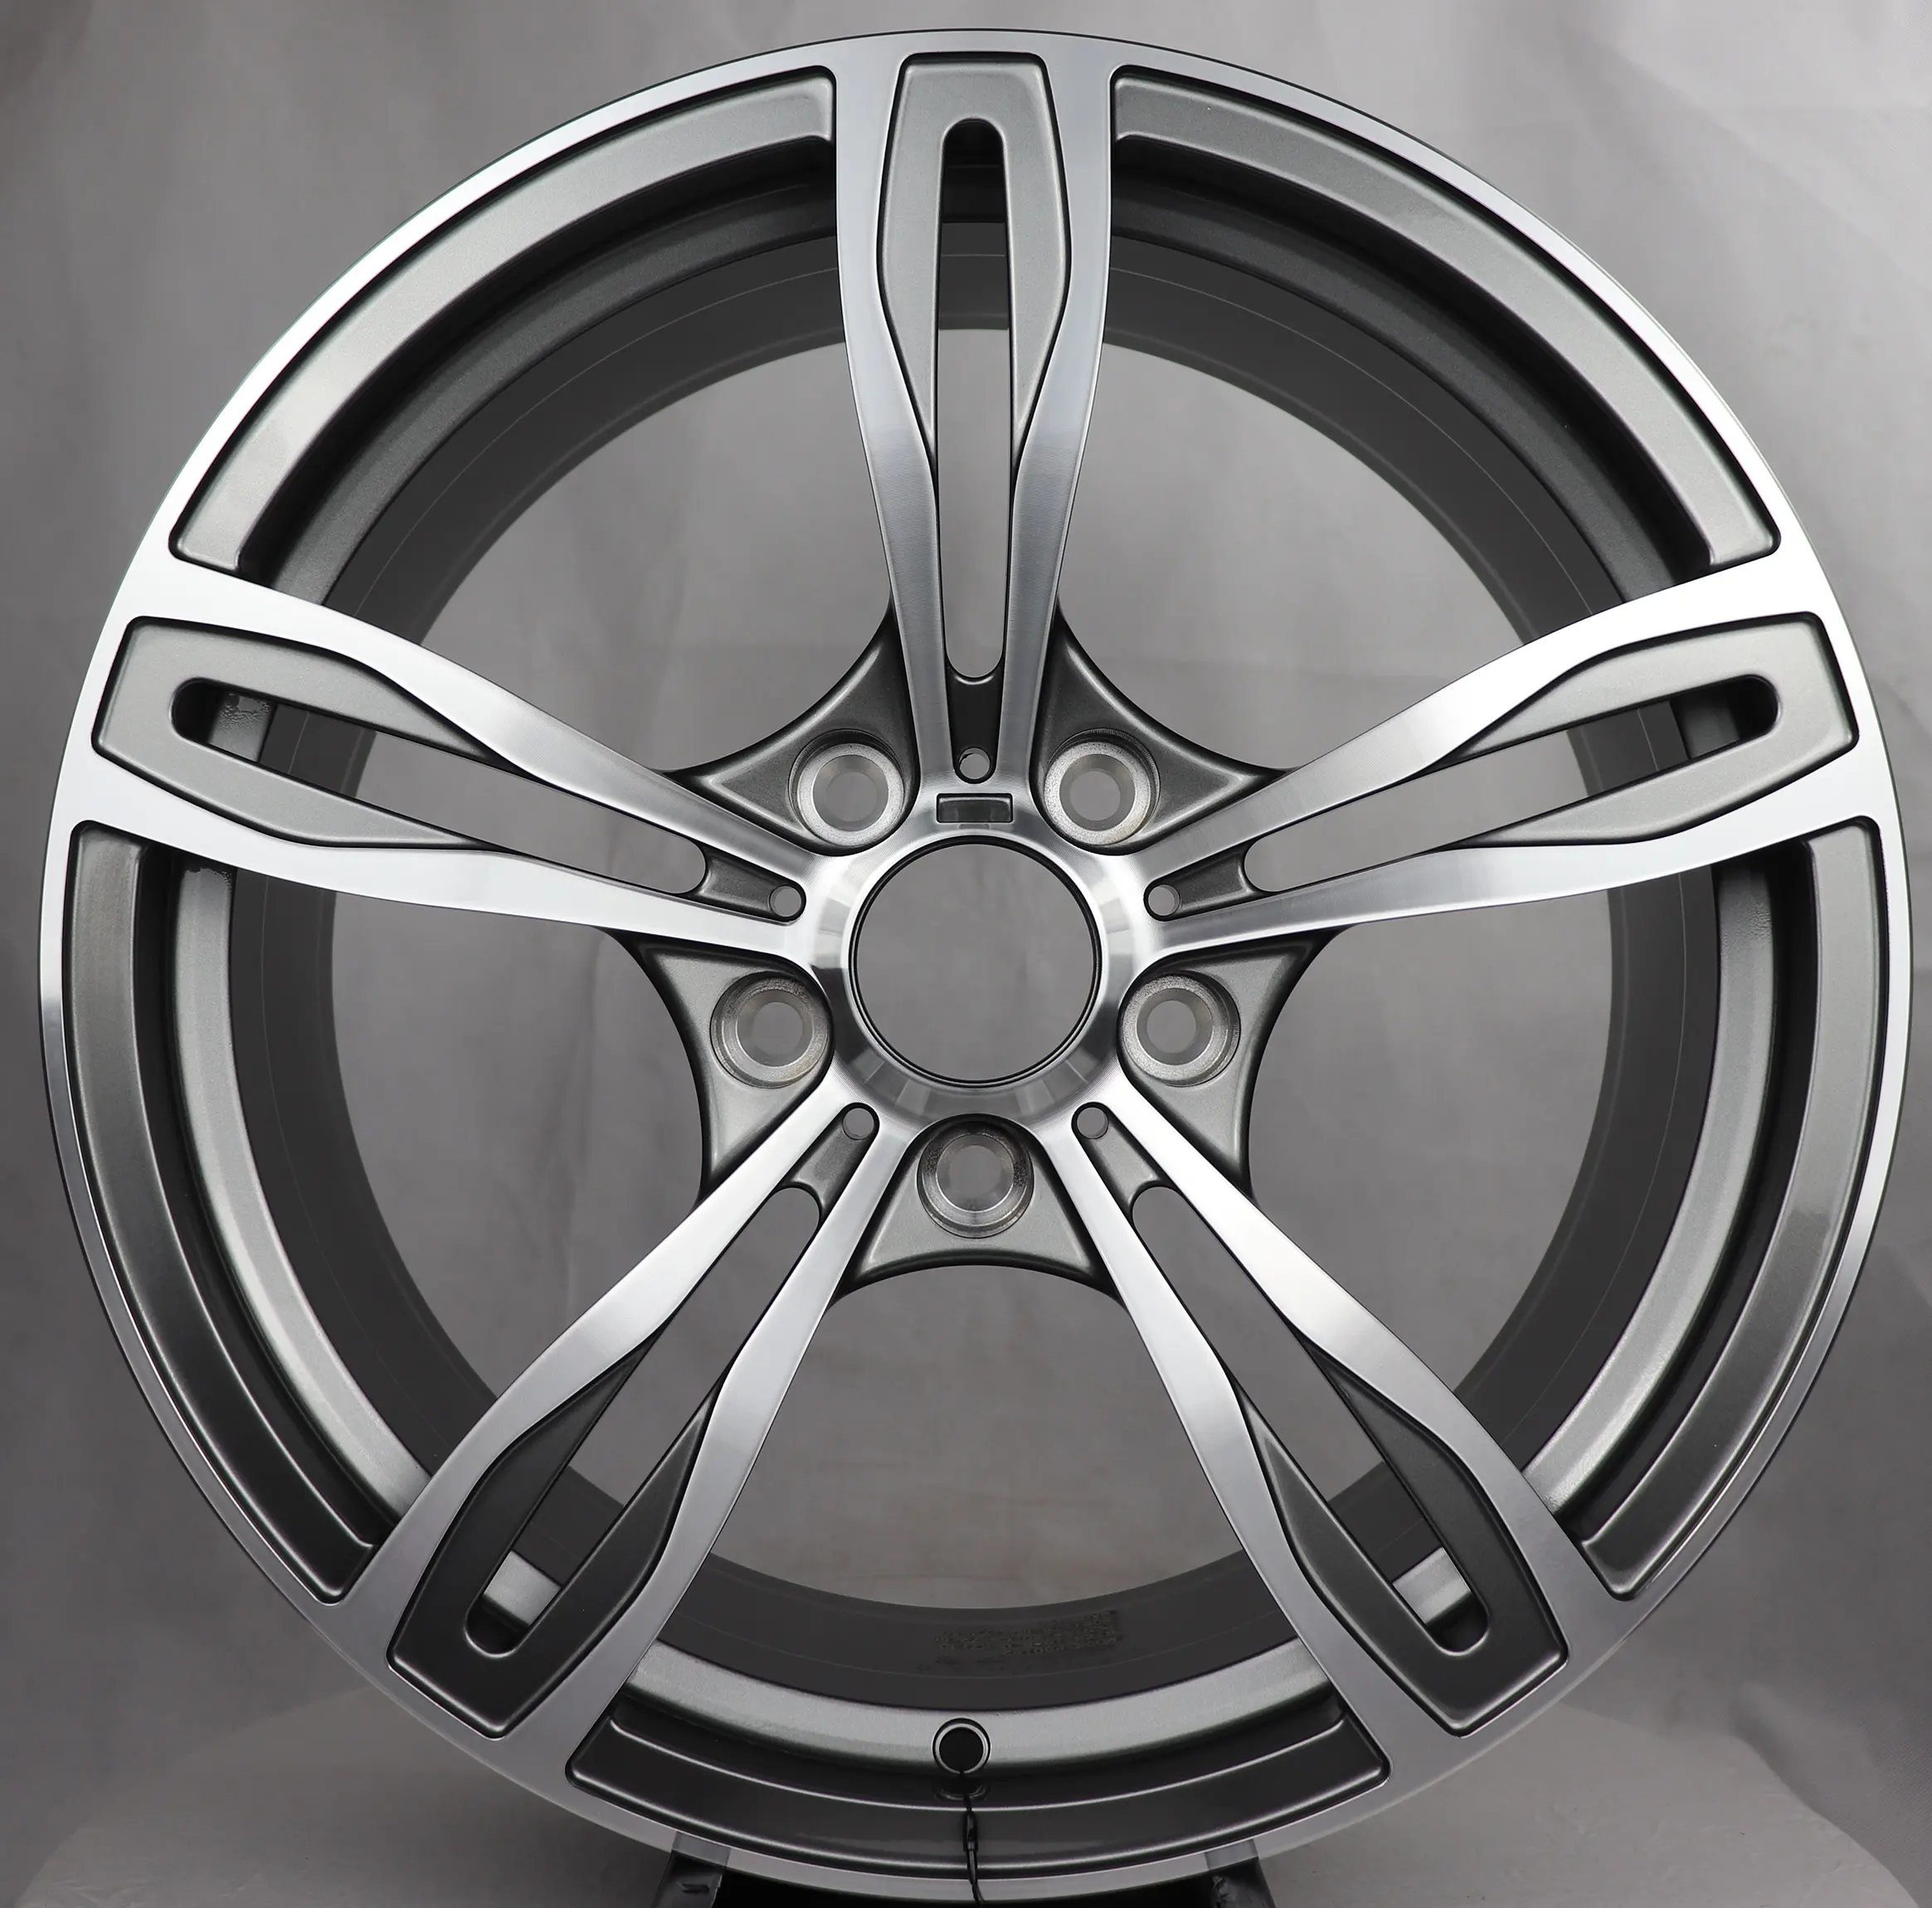 Fb0162 roda de carro para passageiros, design mais forte, uma peça, rodas forjadas 18, 19, 20 polegadas, liga metálica, para bmw